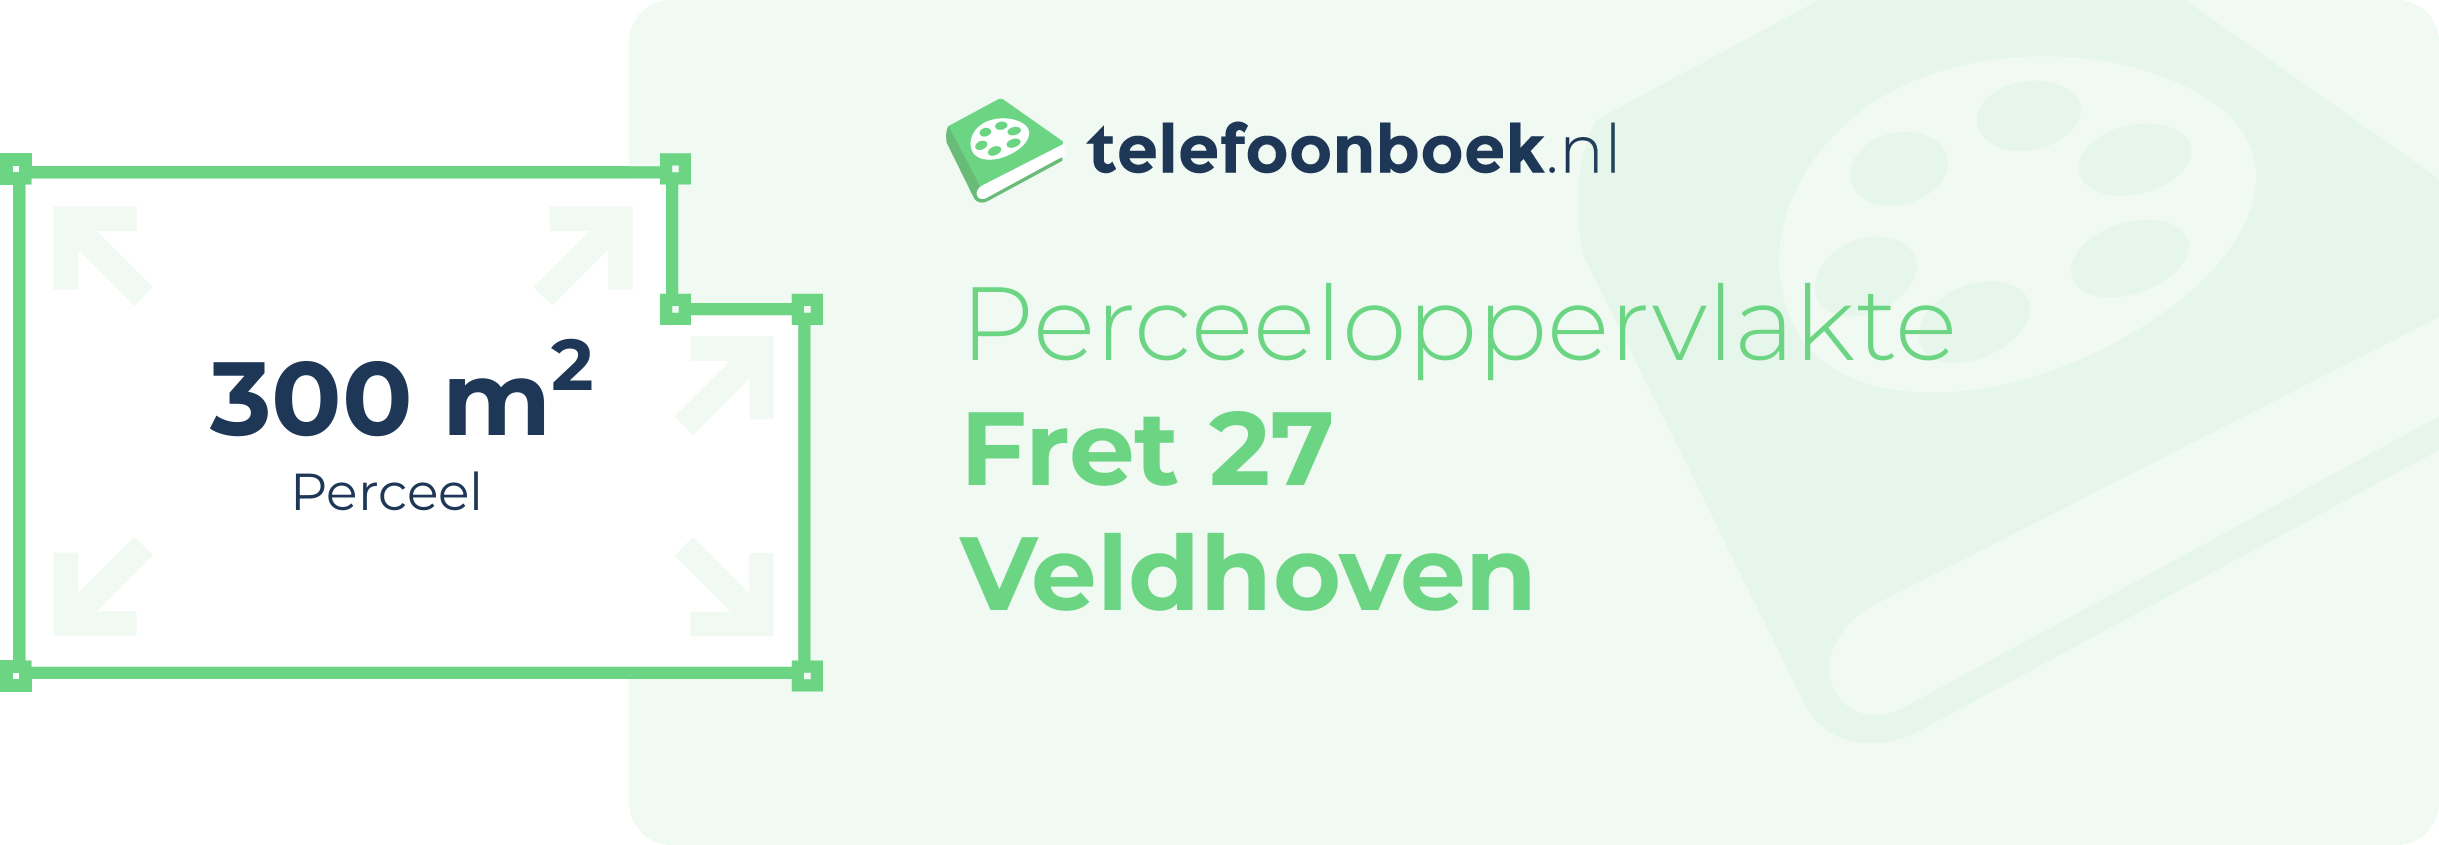 Perceeloppervlakte Fret 27 Veldhoven